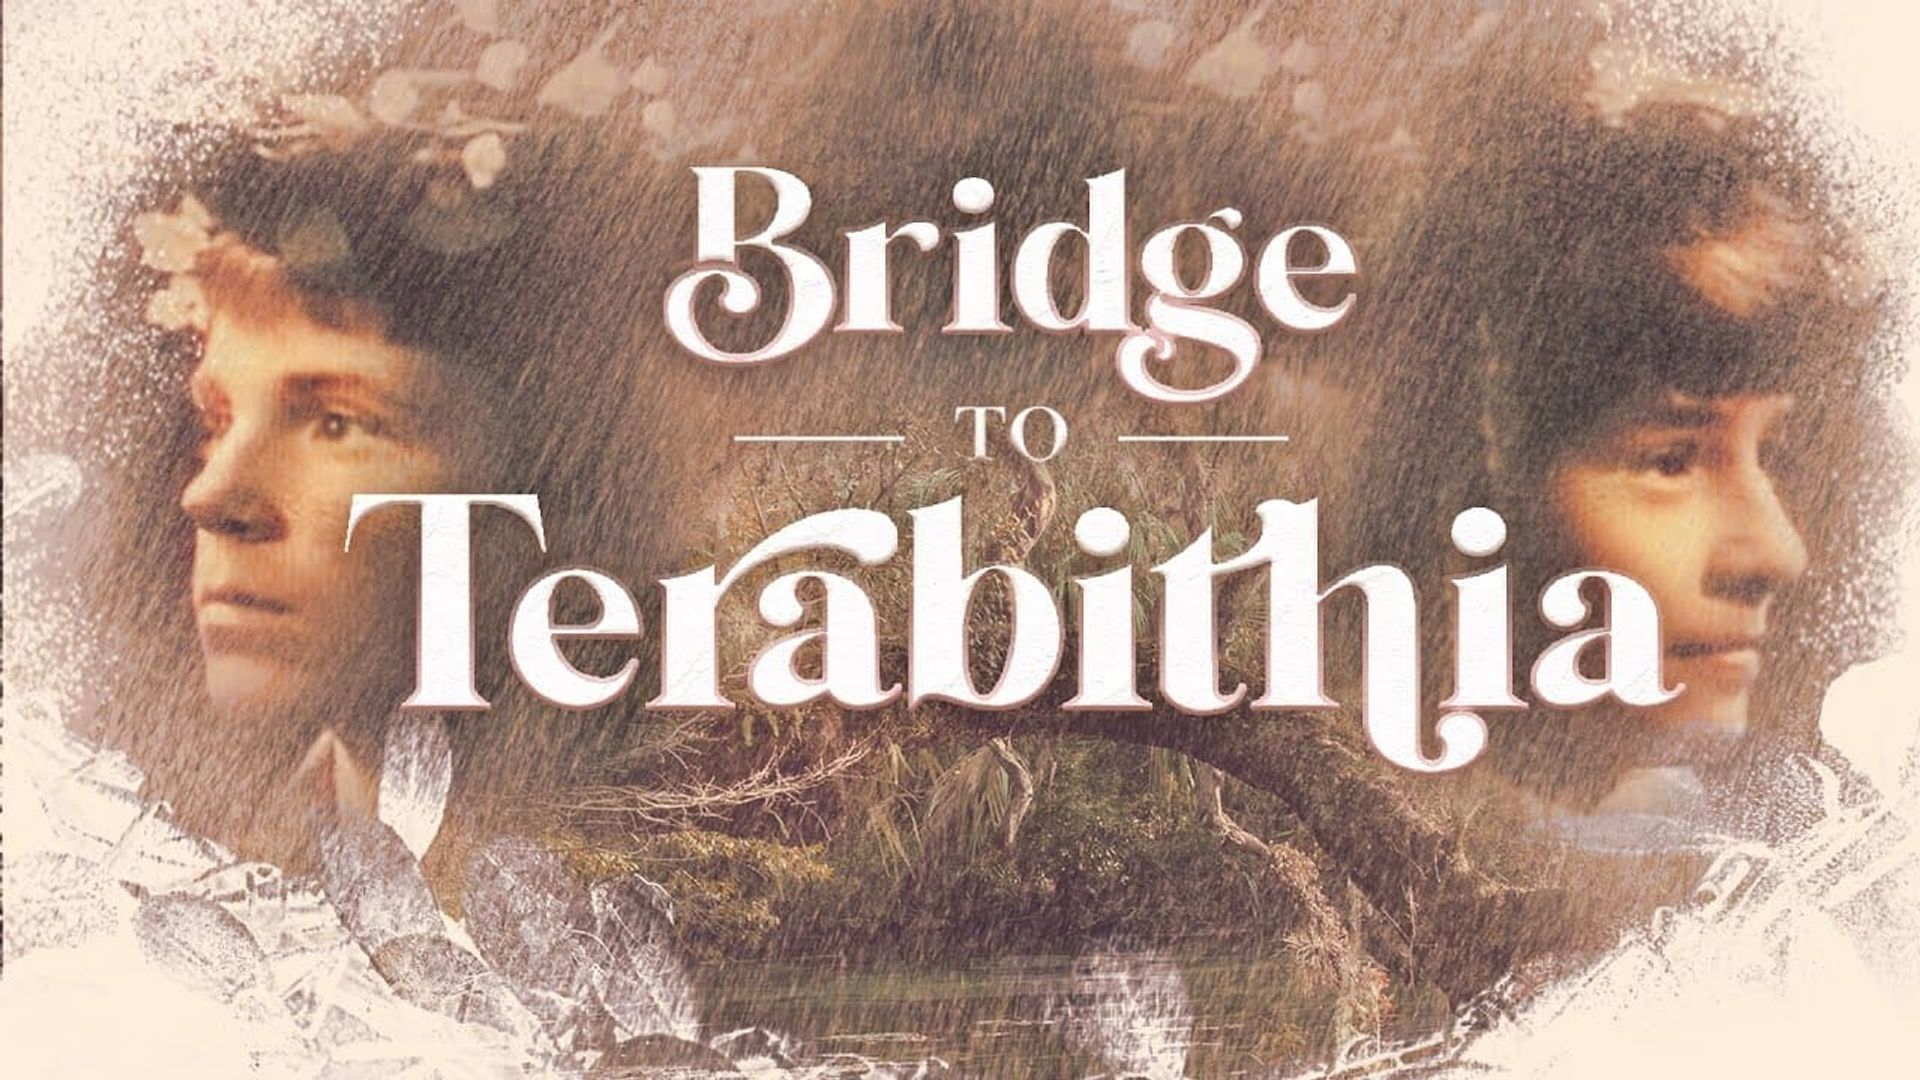 Bridge to Terabithia background